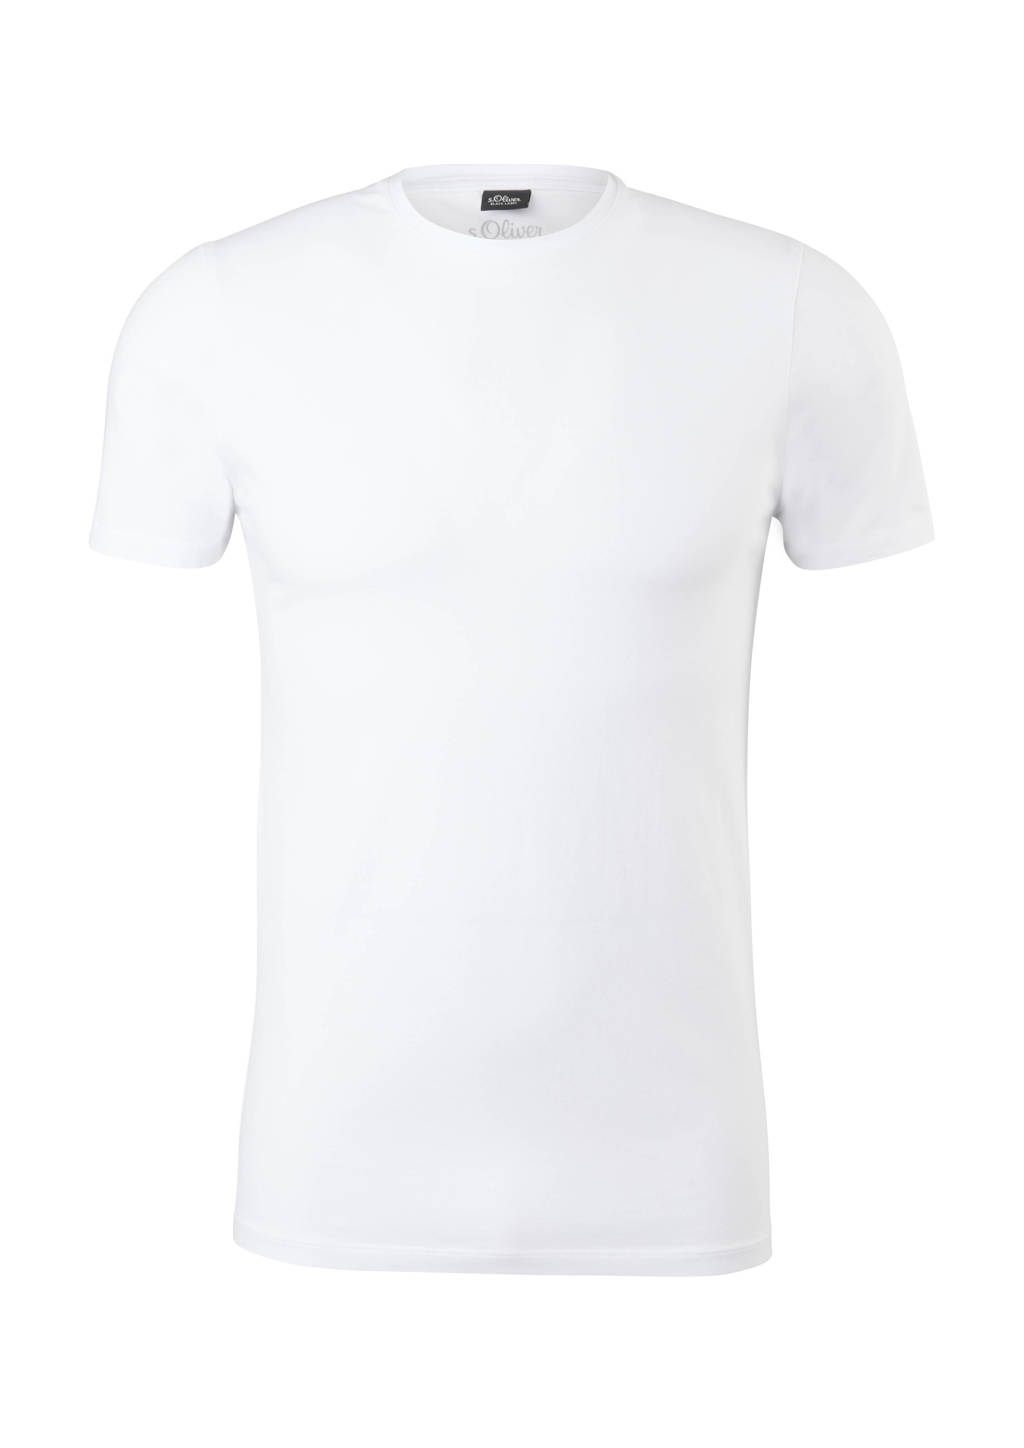 s.Oliver BLACK LABEL T-shirt wit, Wit